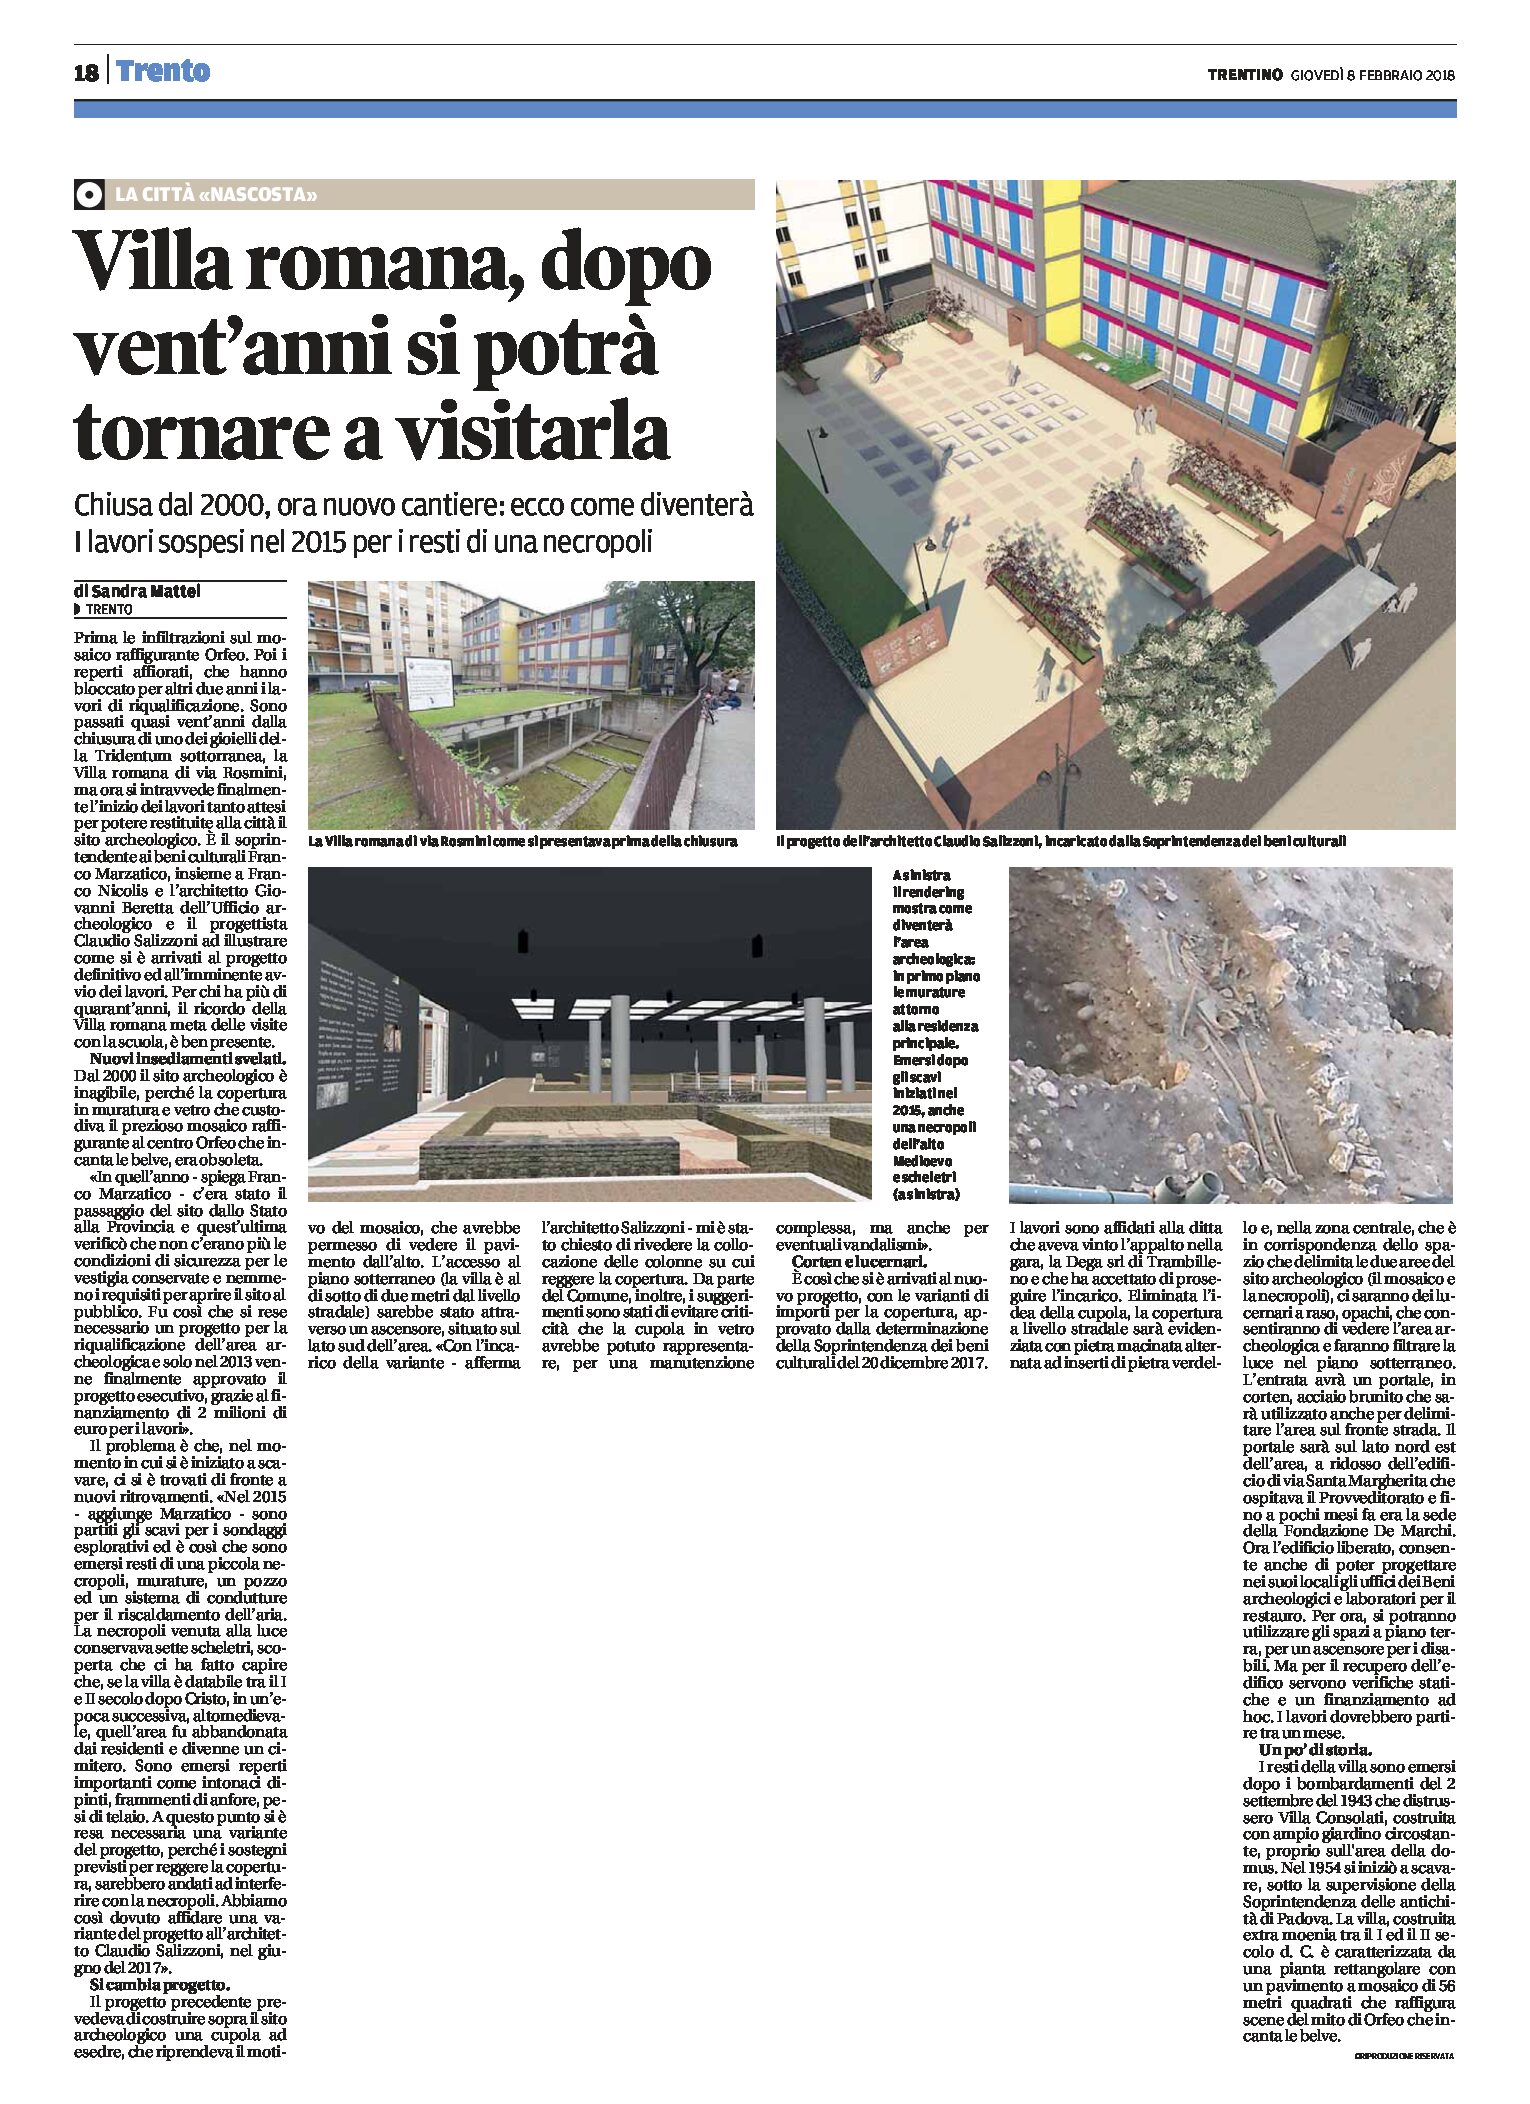 Trento: Villa romana di via Rosmini, inagibile dal 2000, si potrà tornare a visitarla